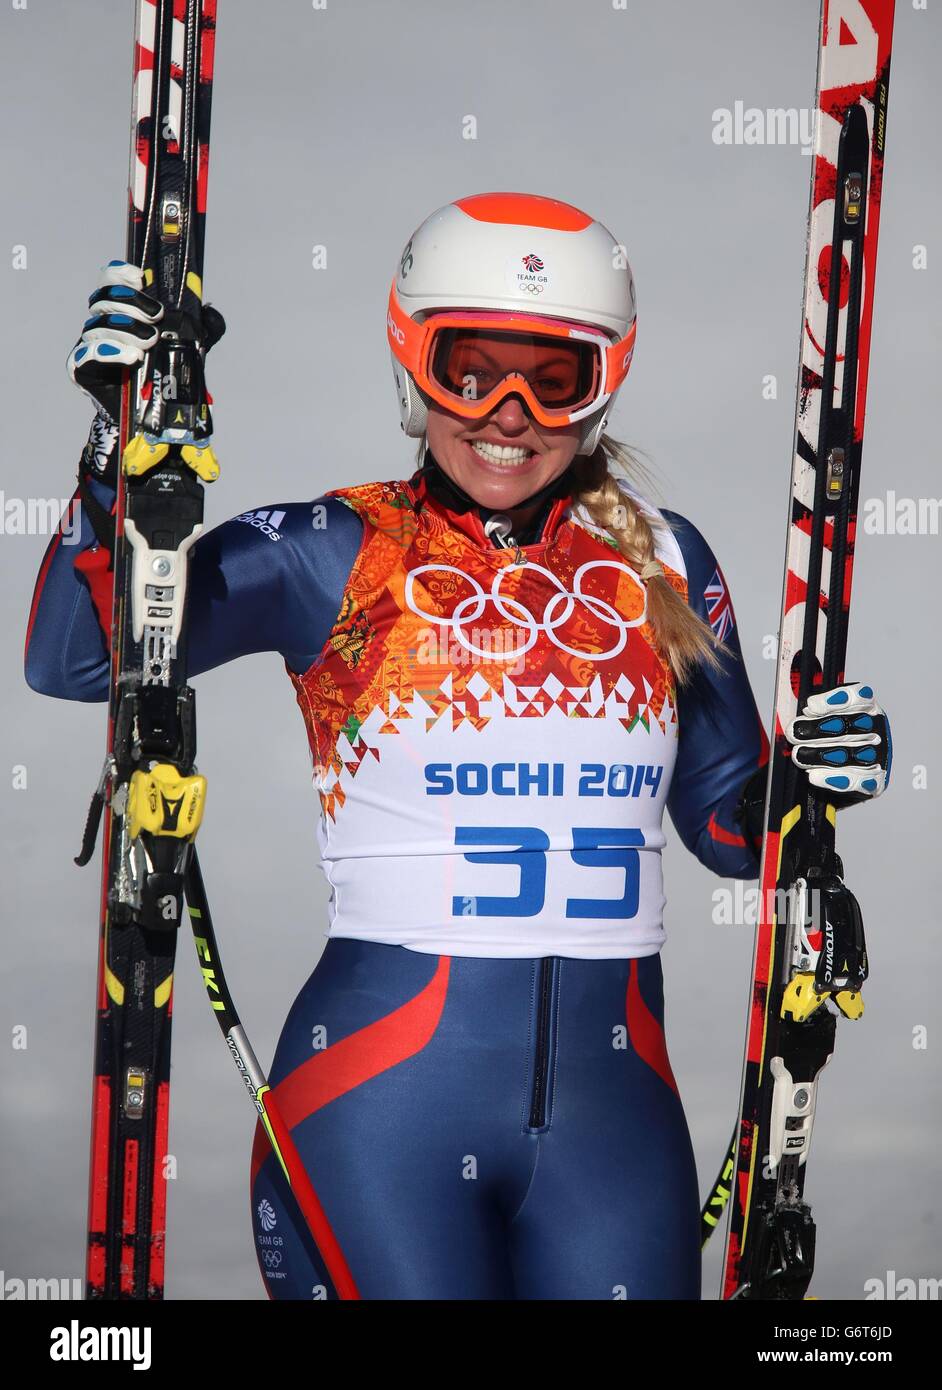 La Gran Bretagna Chemmy Alcott dopo aver completato la sua corsa nel Ladies' Downhill al Rosa Khutor Alpine Center durante i Giochi Olimpici di Sochi 2014 a Krasnaya Polyana, Russia. Foto Stock